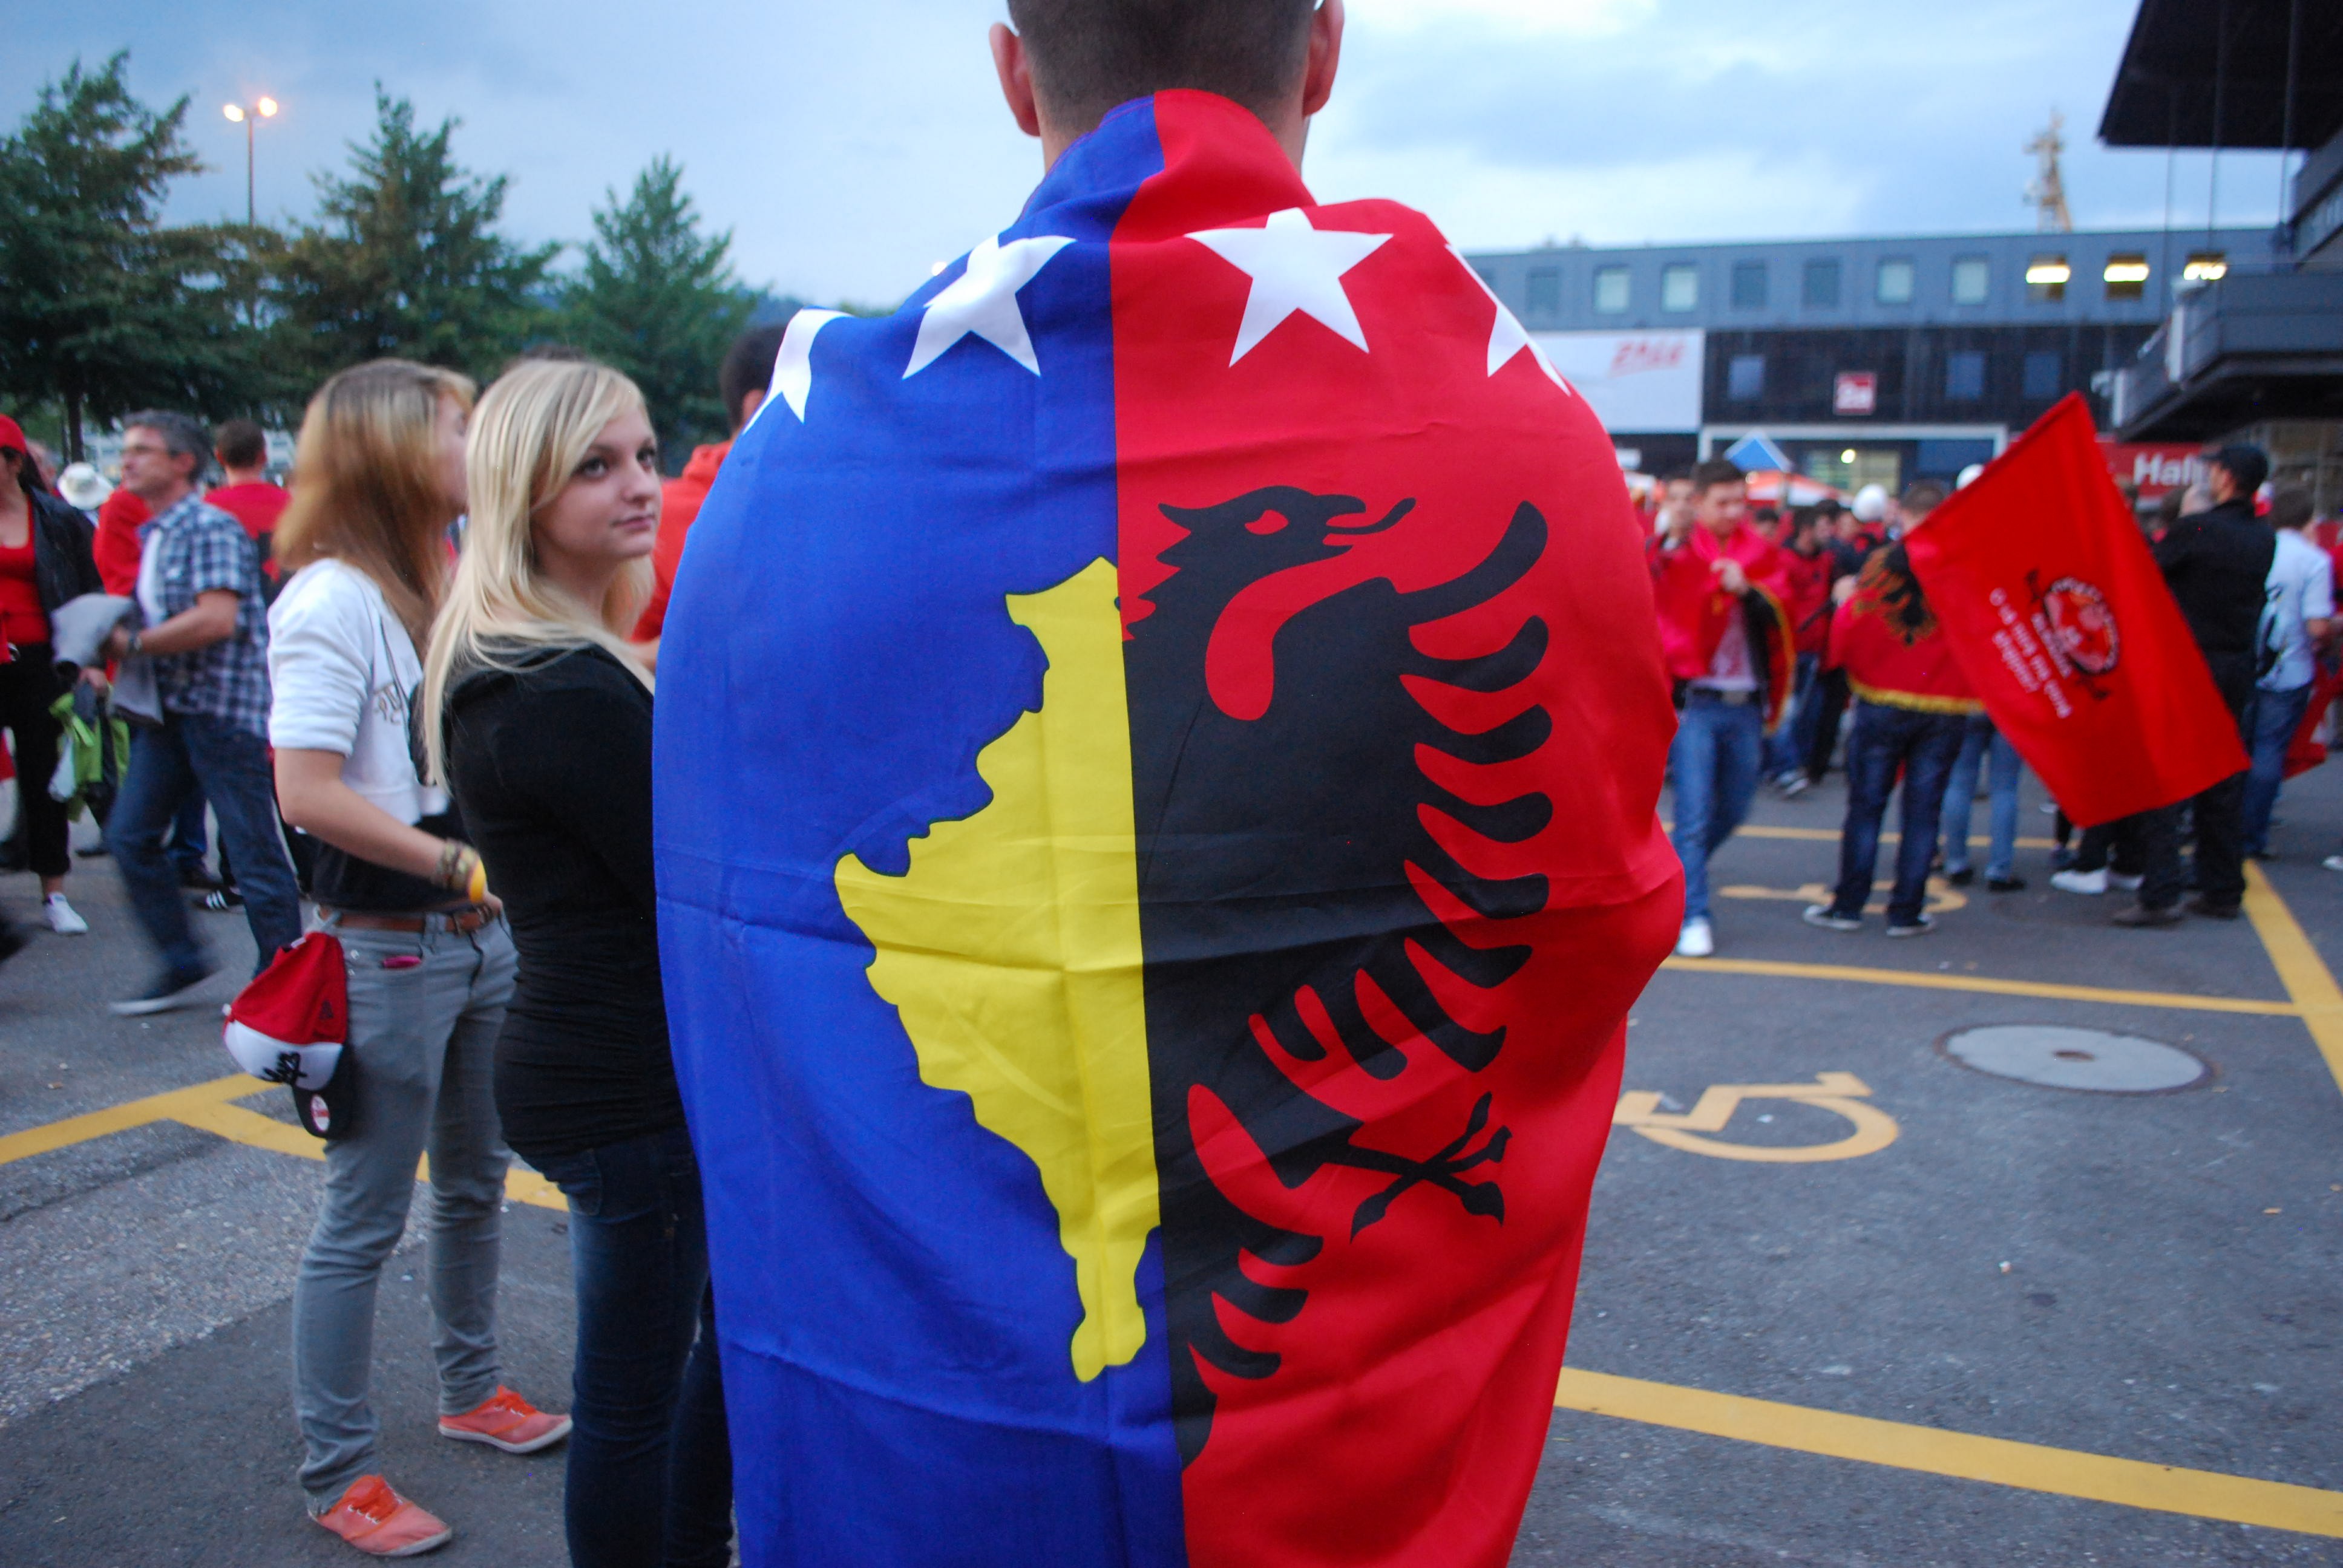 KPK, thirrje që Shqipëria të rindërtohet me produkte vendore dhe nga Kosova  